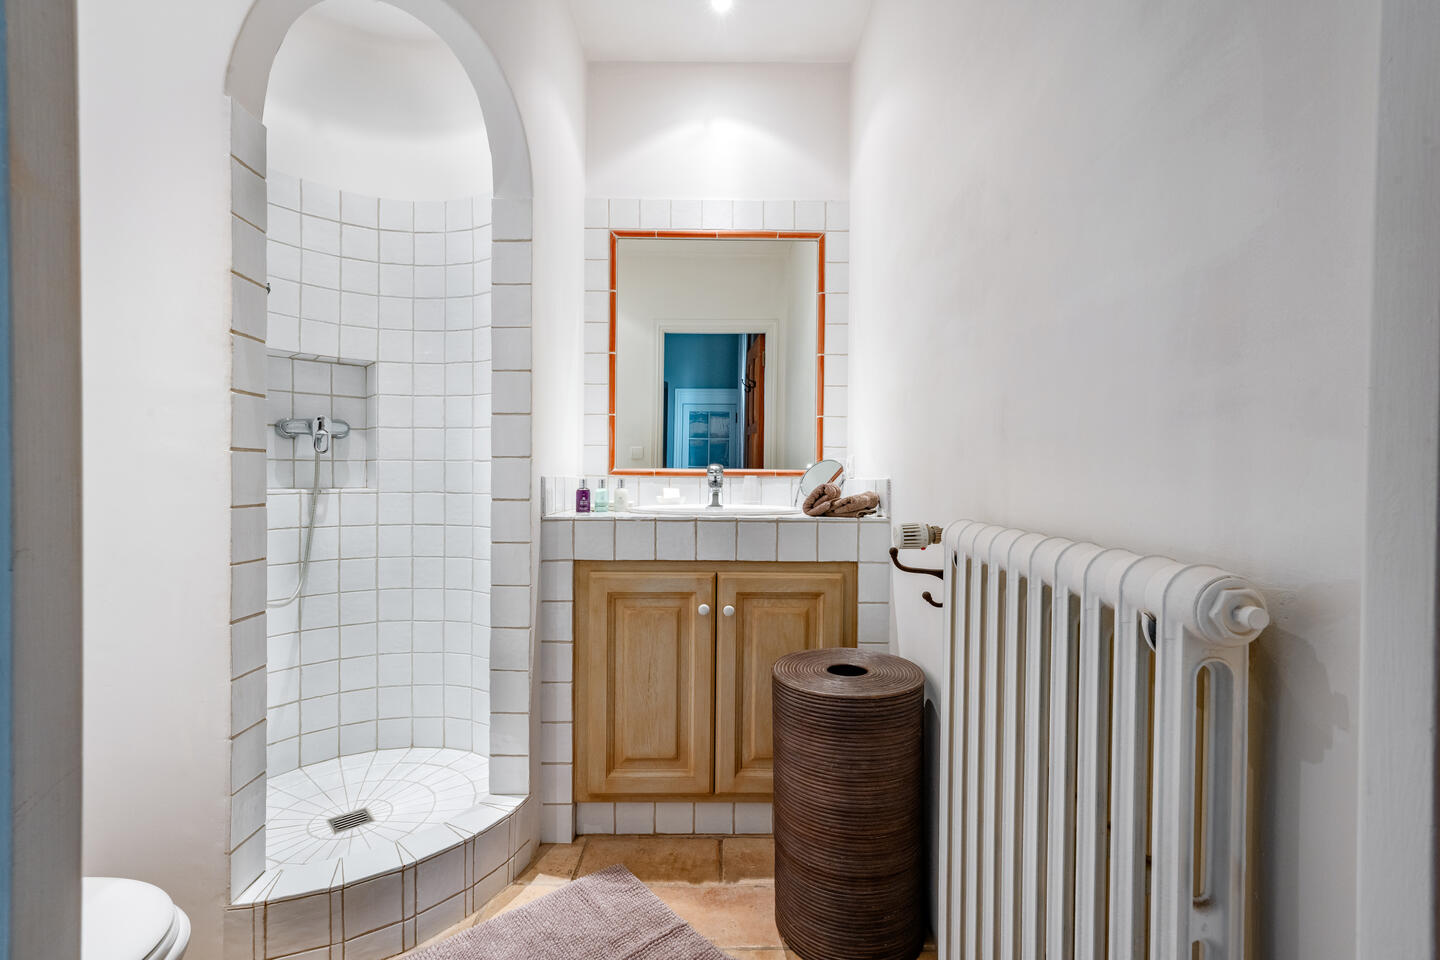 56 - Eden Provençal: Villa: Bathroom